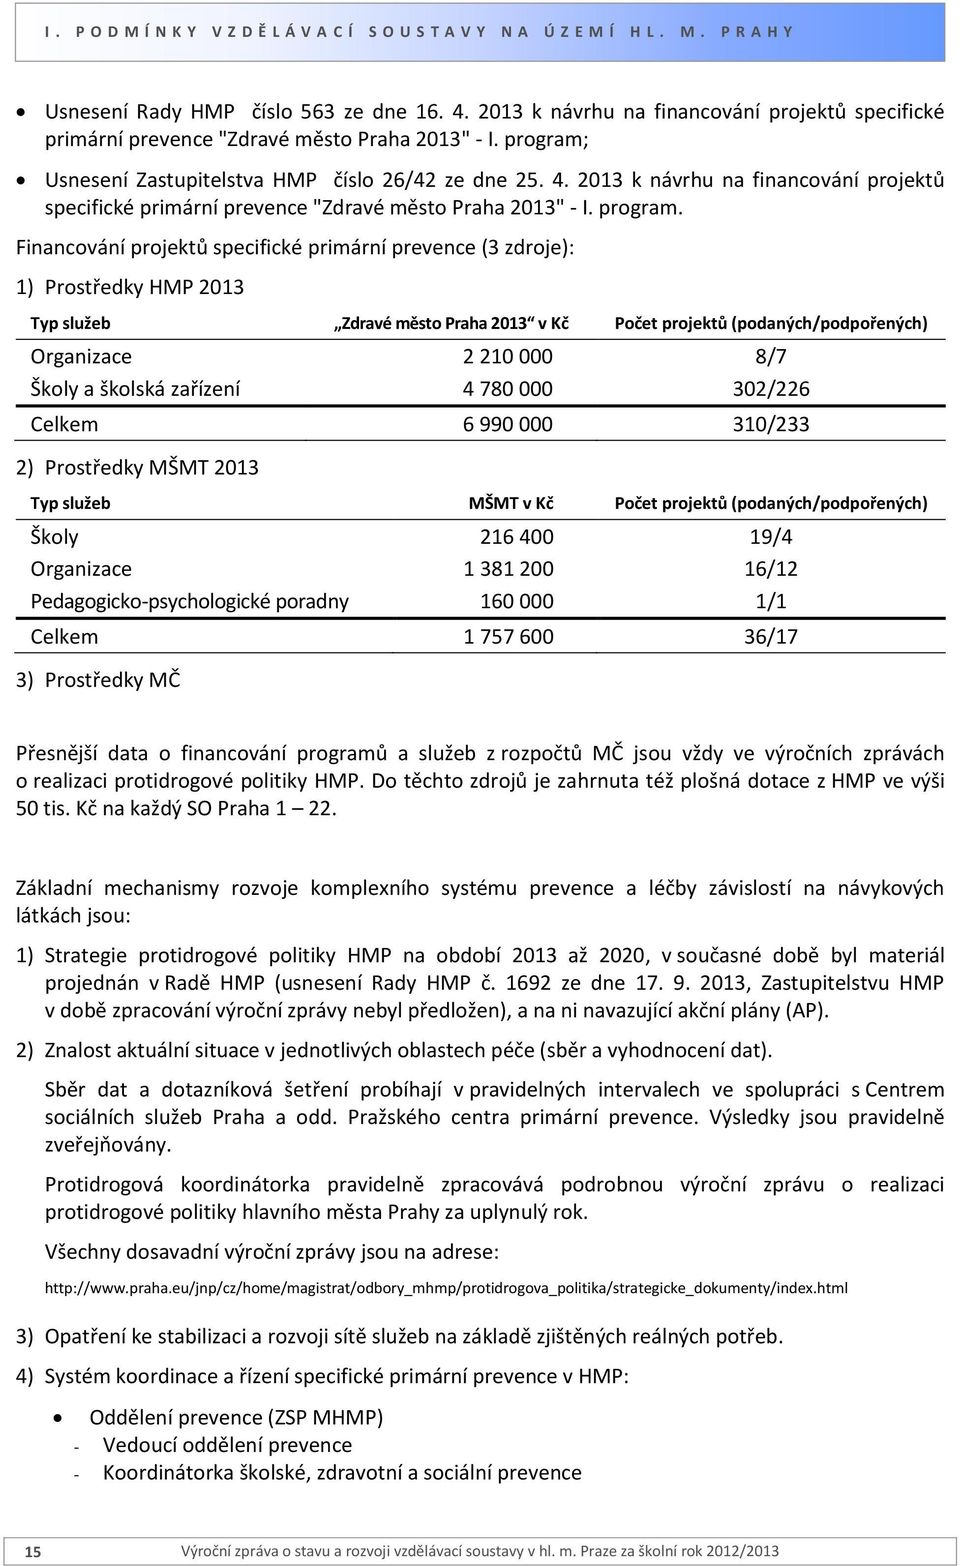 2013 k návrhu na financování projektů specifické primární prevence "Zdravé město Praha 2013" - I. program.